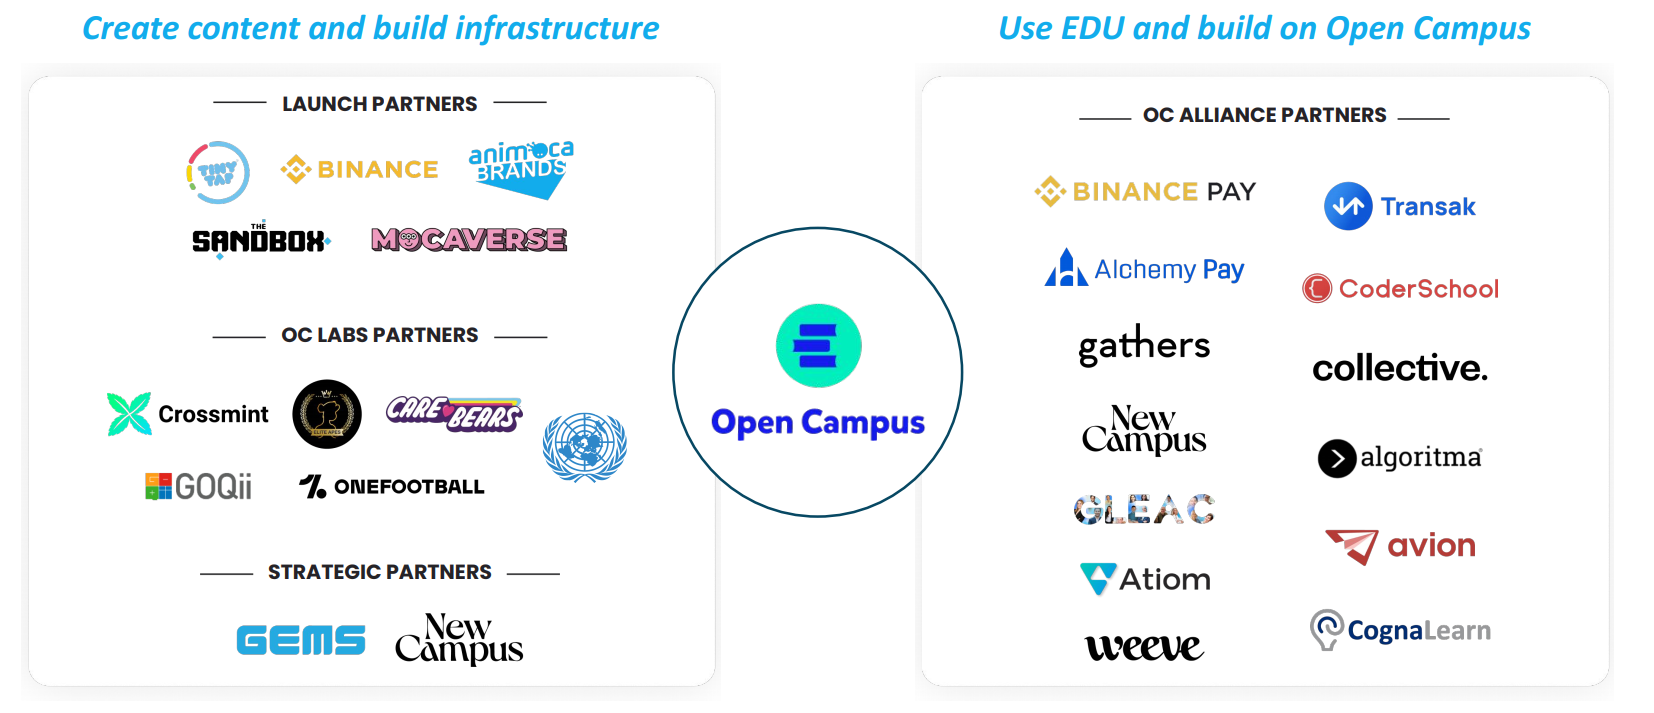 Open Campus thu hút nhiều đối tác tạo nội dung và sử dụng token EDU